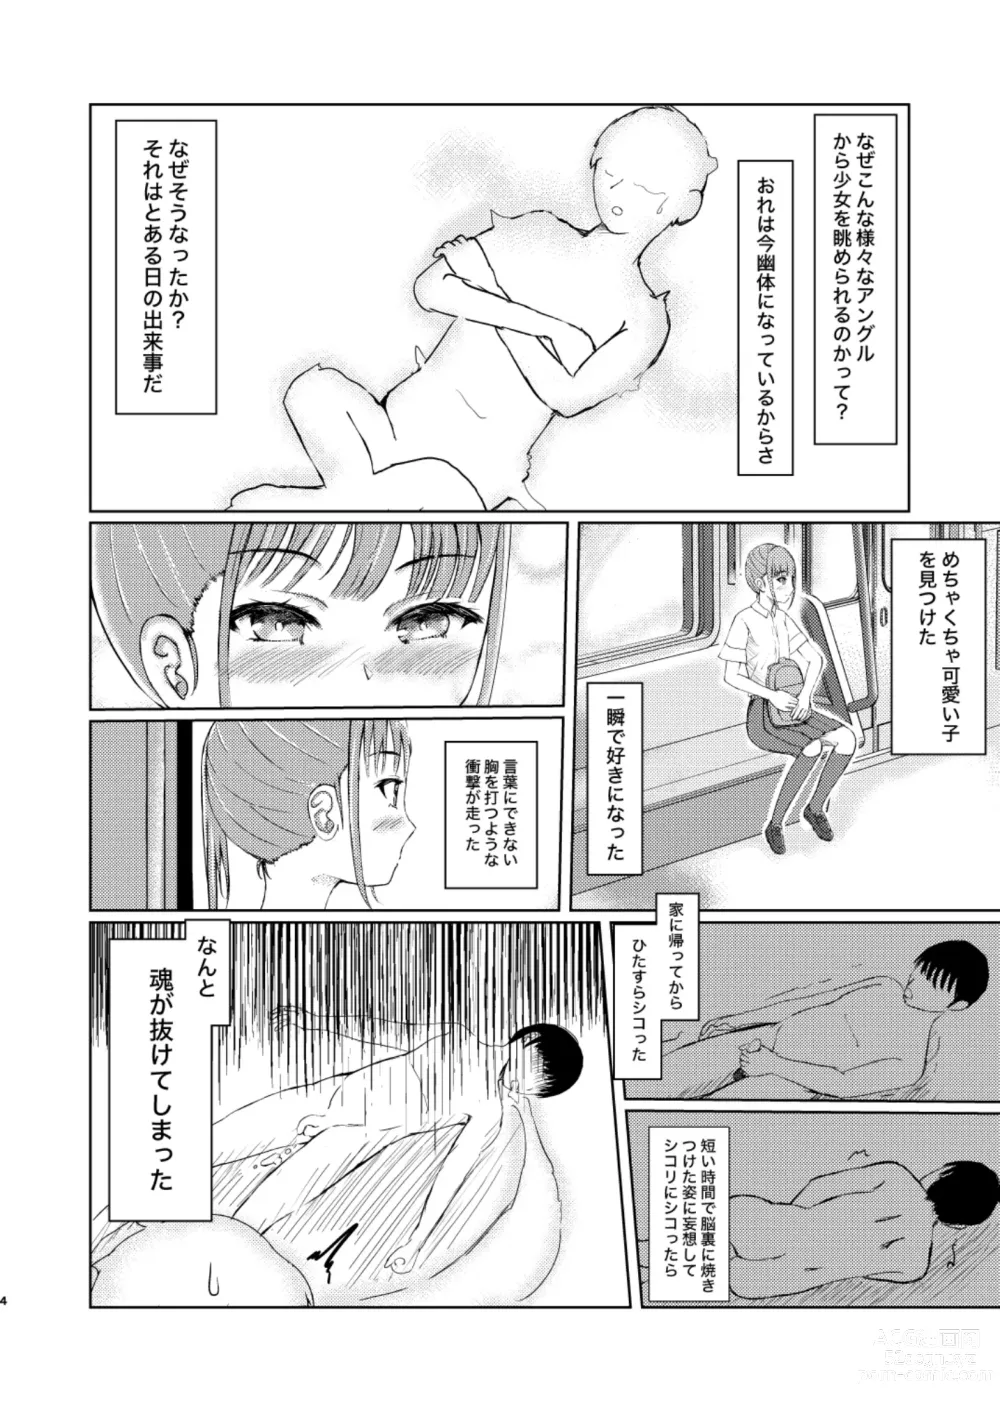 Page 4 of doujinshi Kawaii Ko Mitsuketa node Naka ni Haitte Mita!